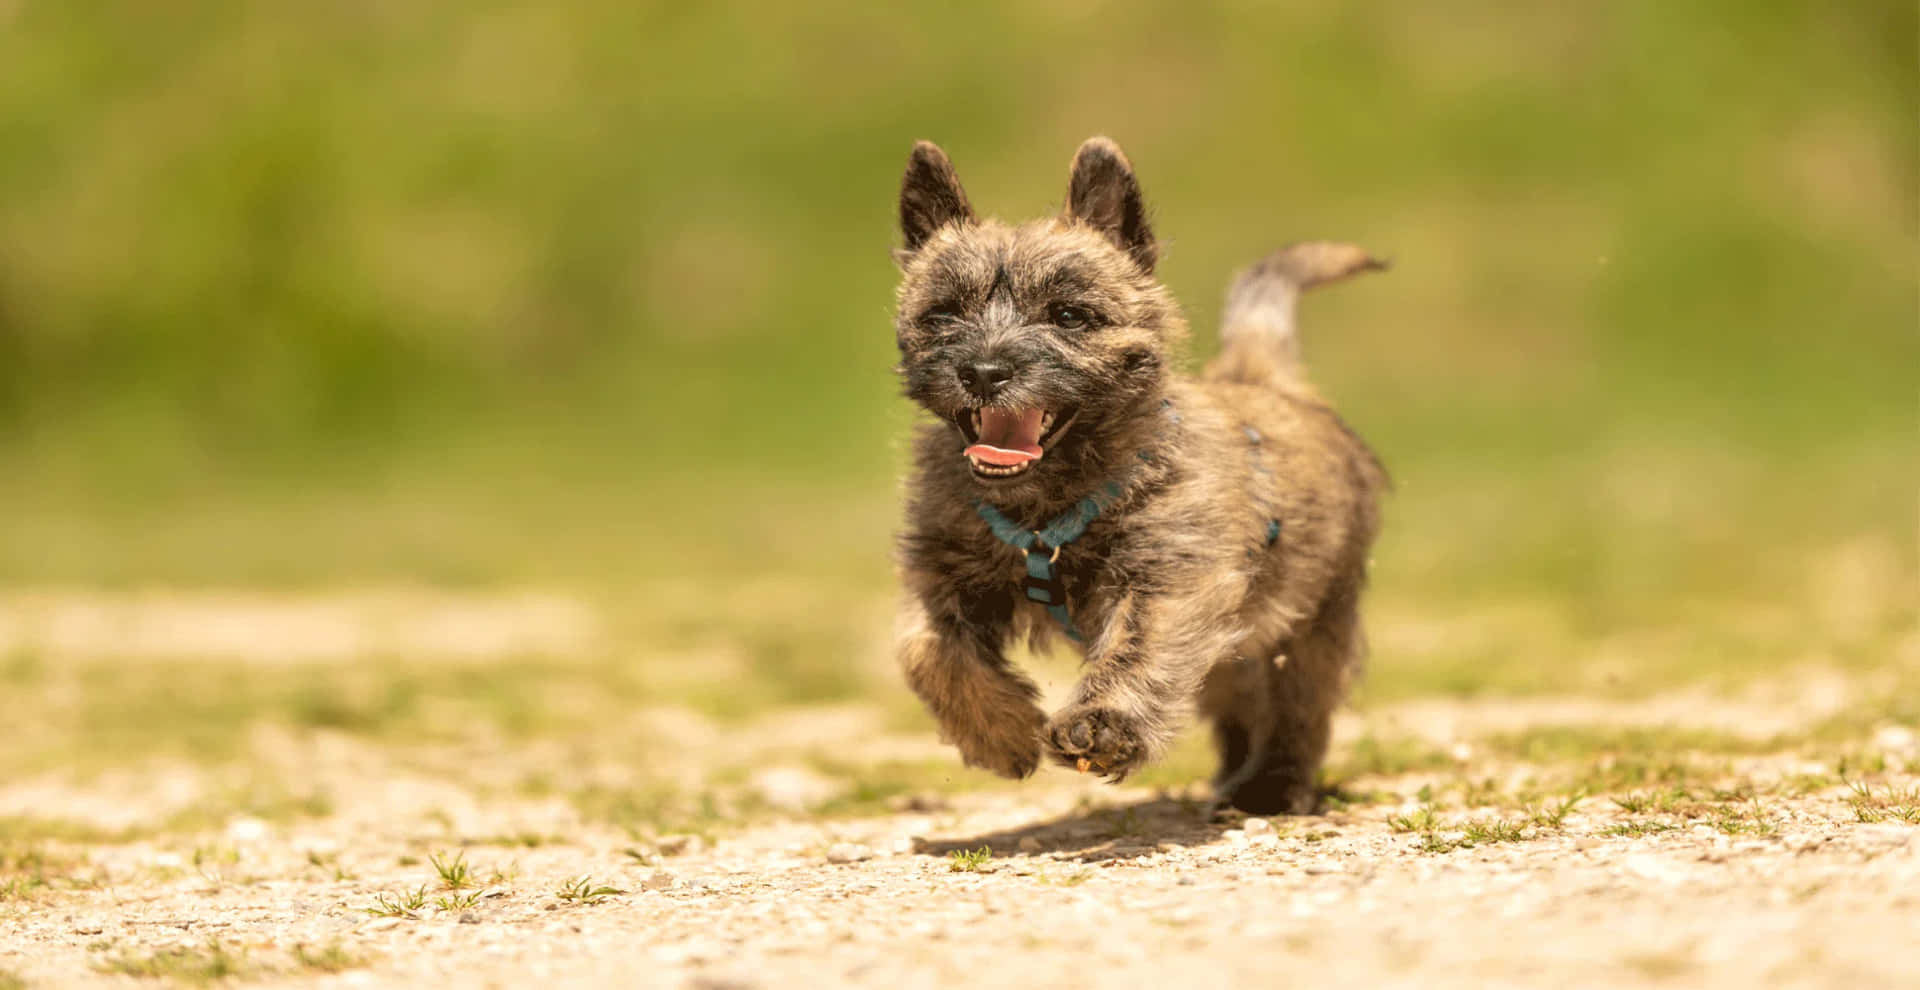 Unpequeño Perro Corriendo En Un Camino De Tierra